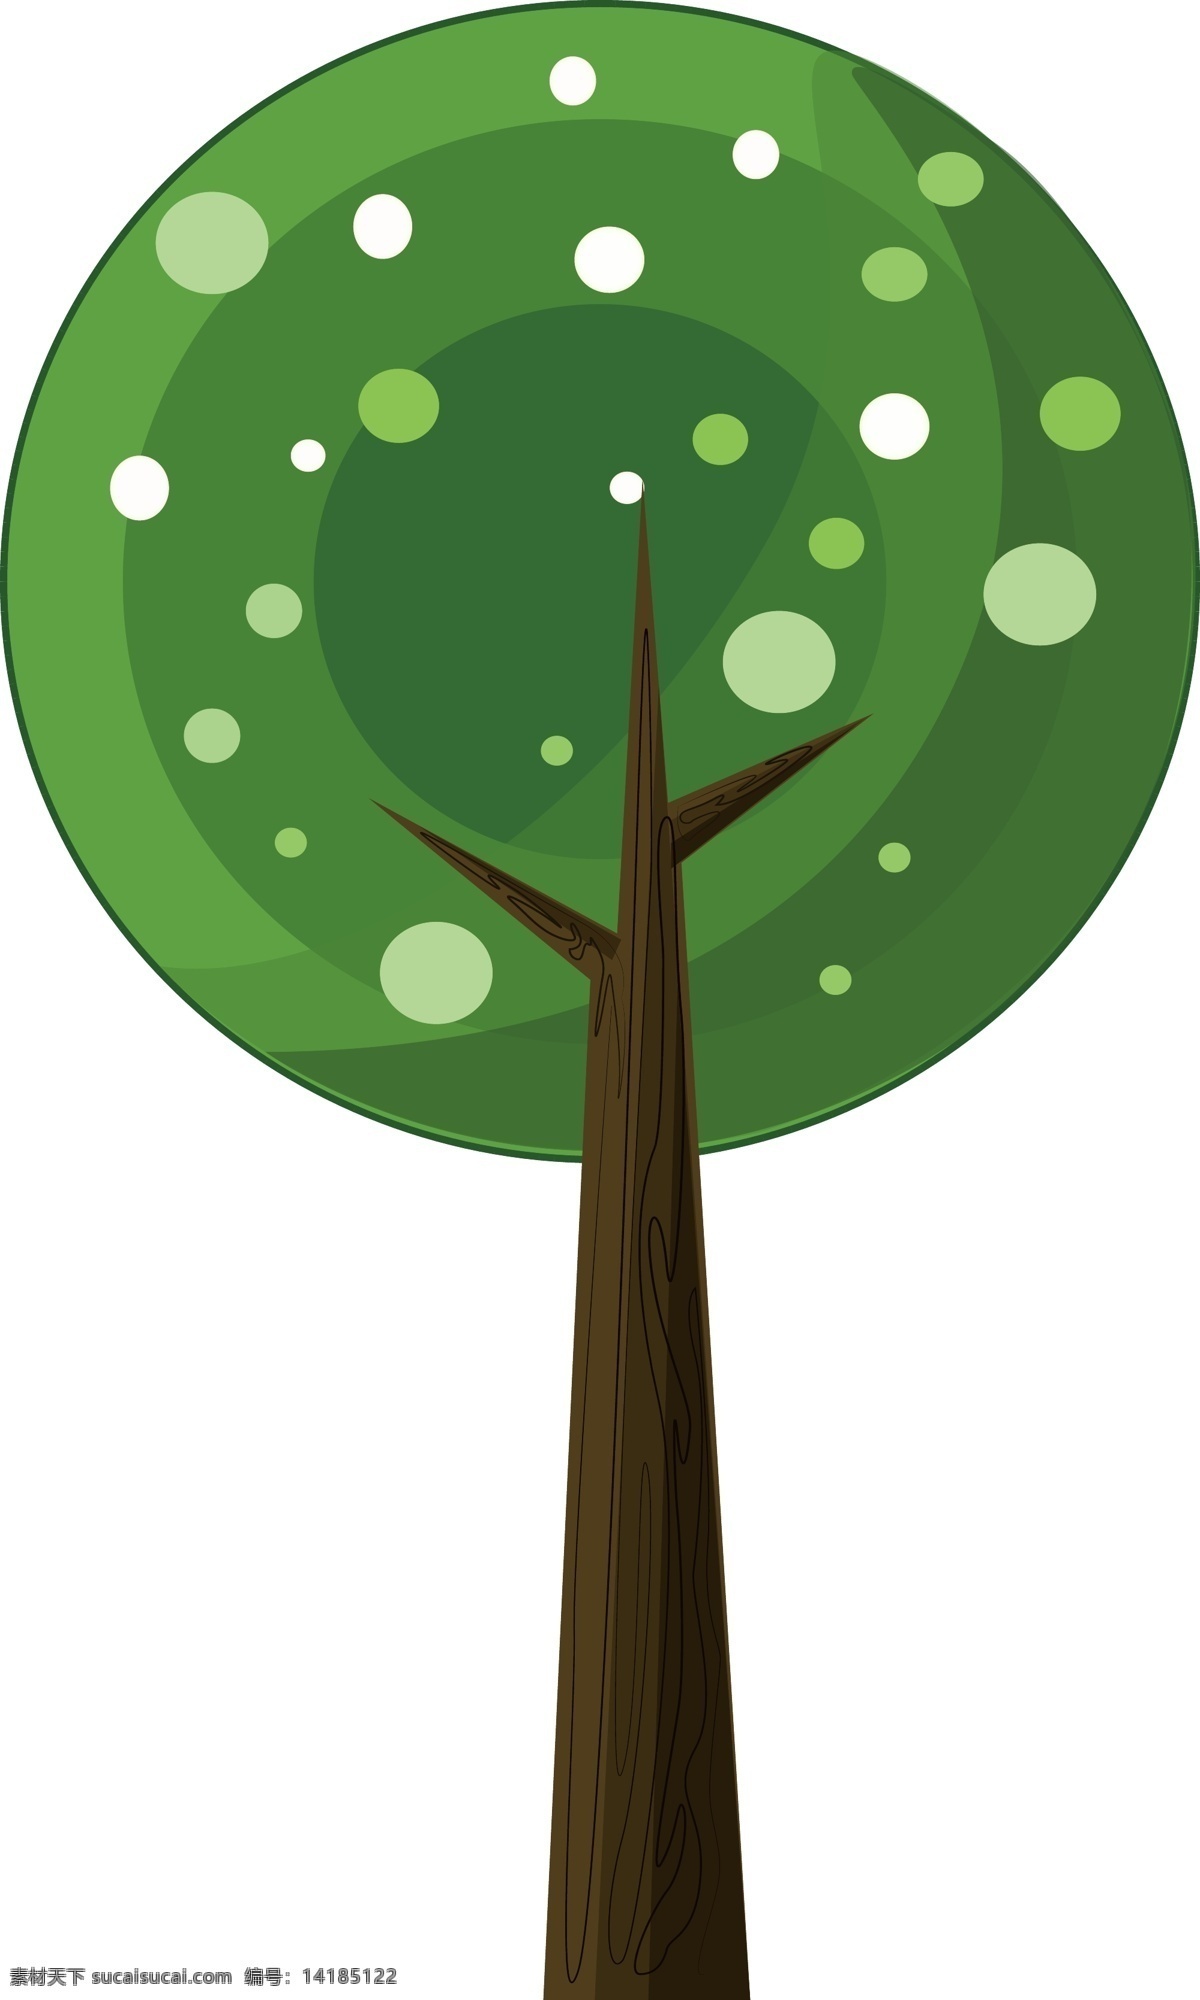 唯美 创意 大树 插画 唯美的植物 卡通植物插画 创意树木 圆形绿色树叶 植物插画 精美的大树